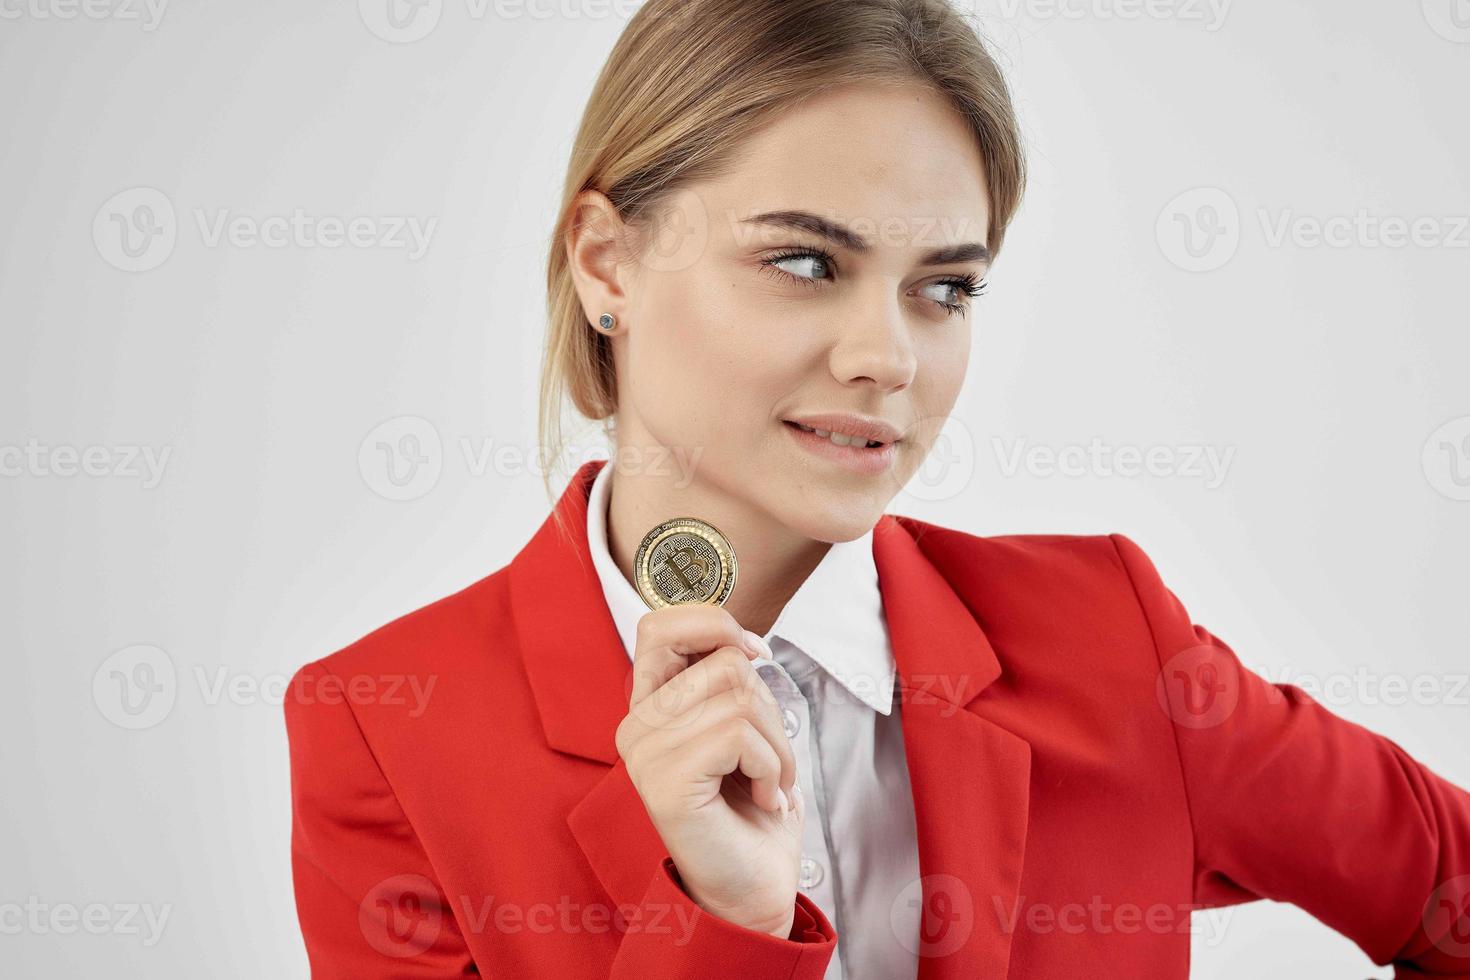 financier Red jacket virtual money economy isolated background photo